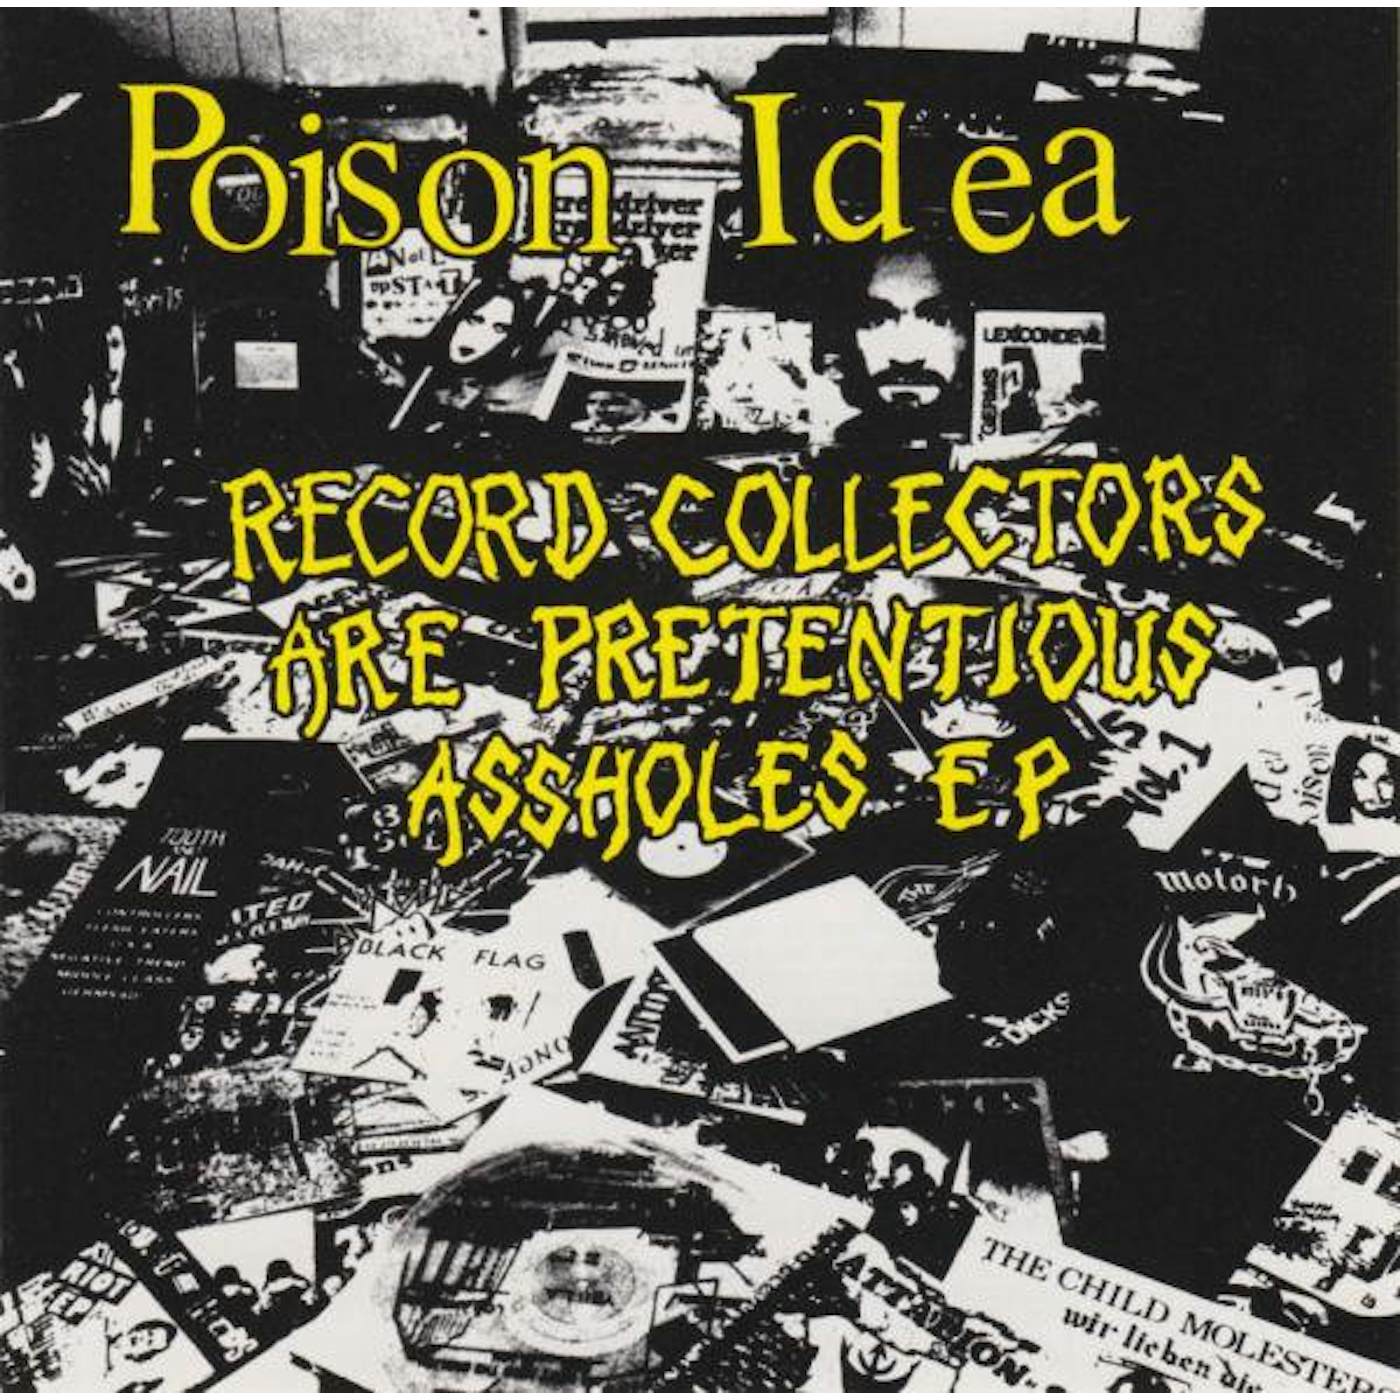 Poison Idea RECORD COLLECTORS ARE PRETENCIOUS CD